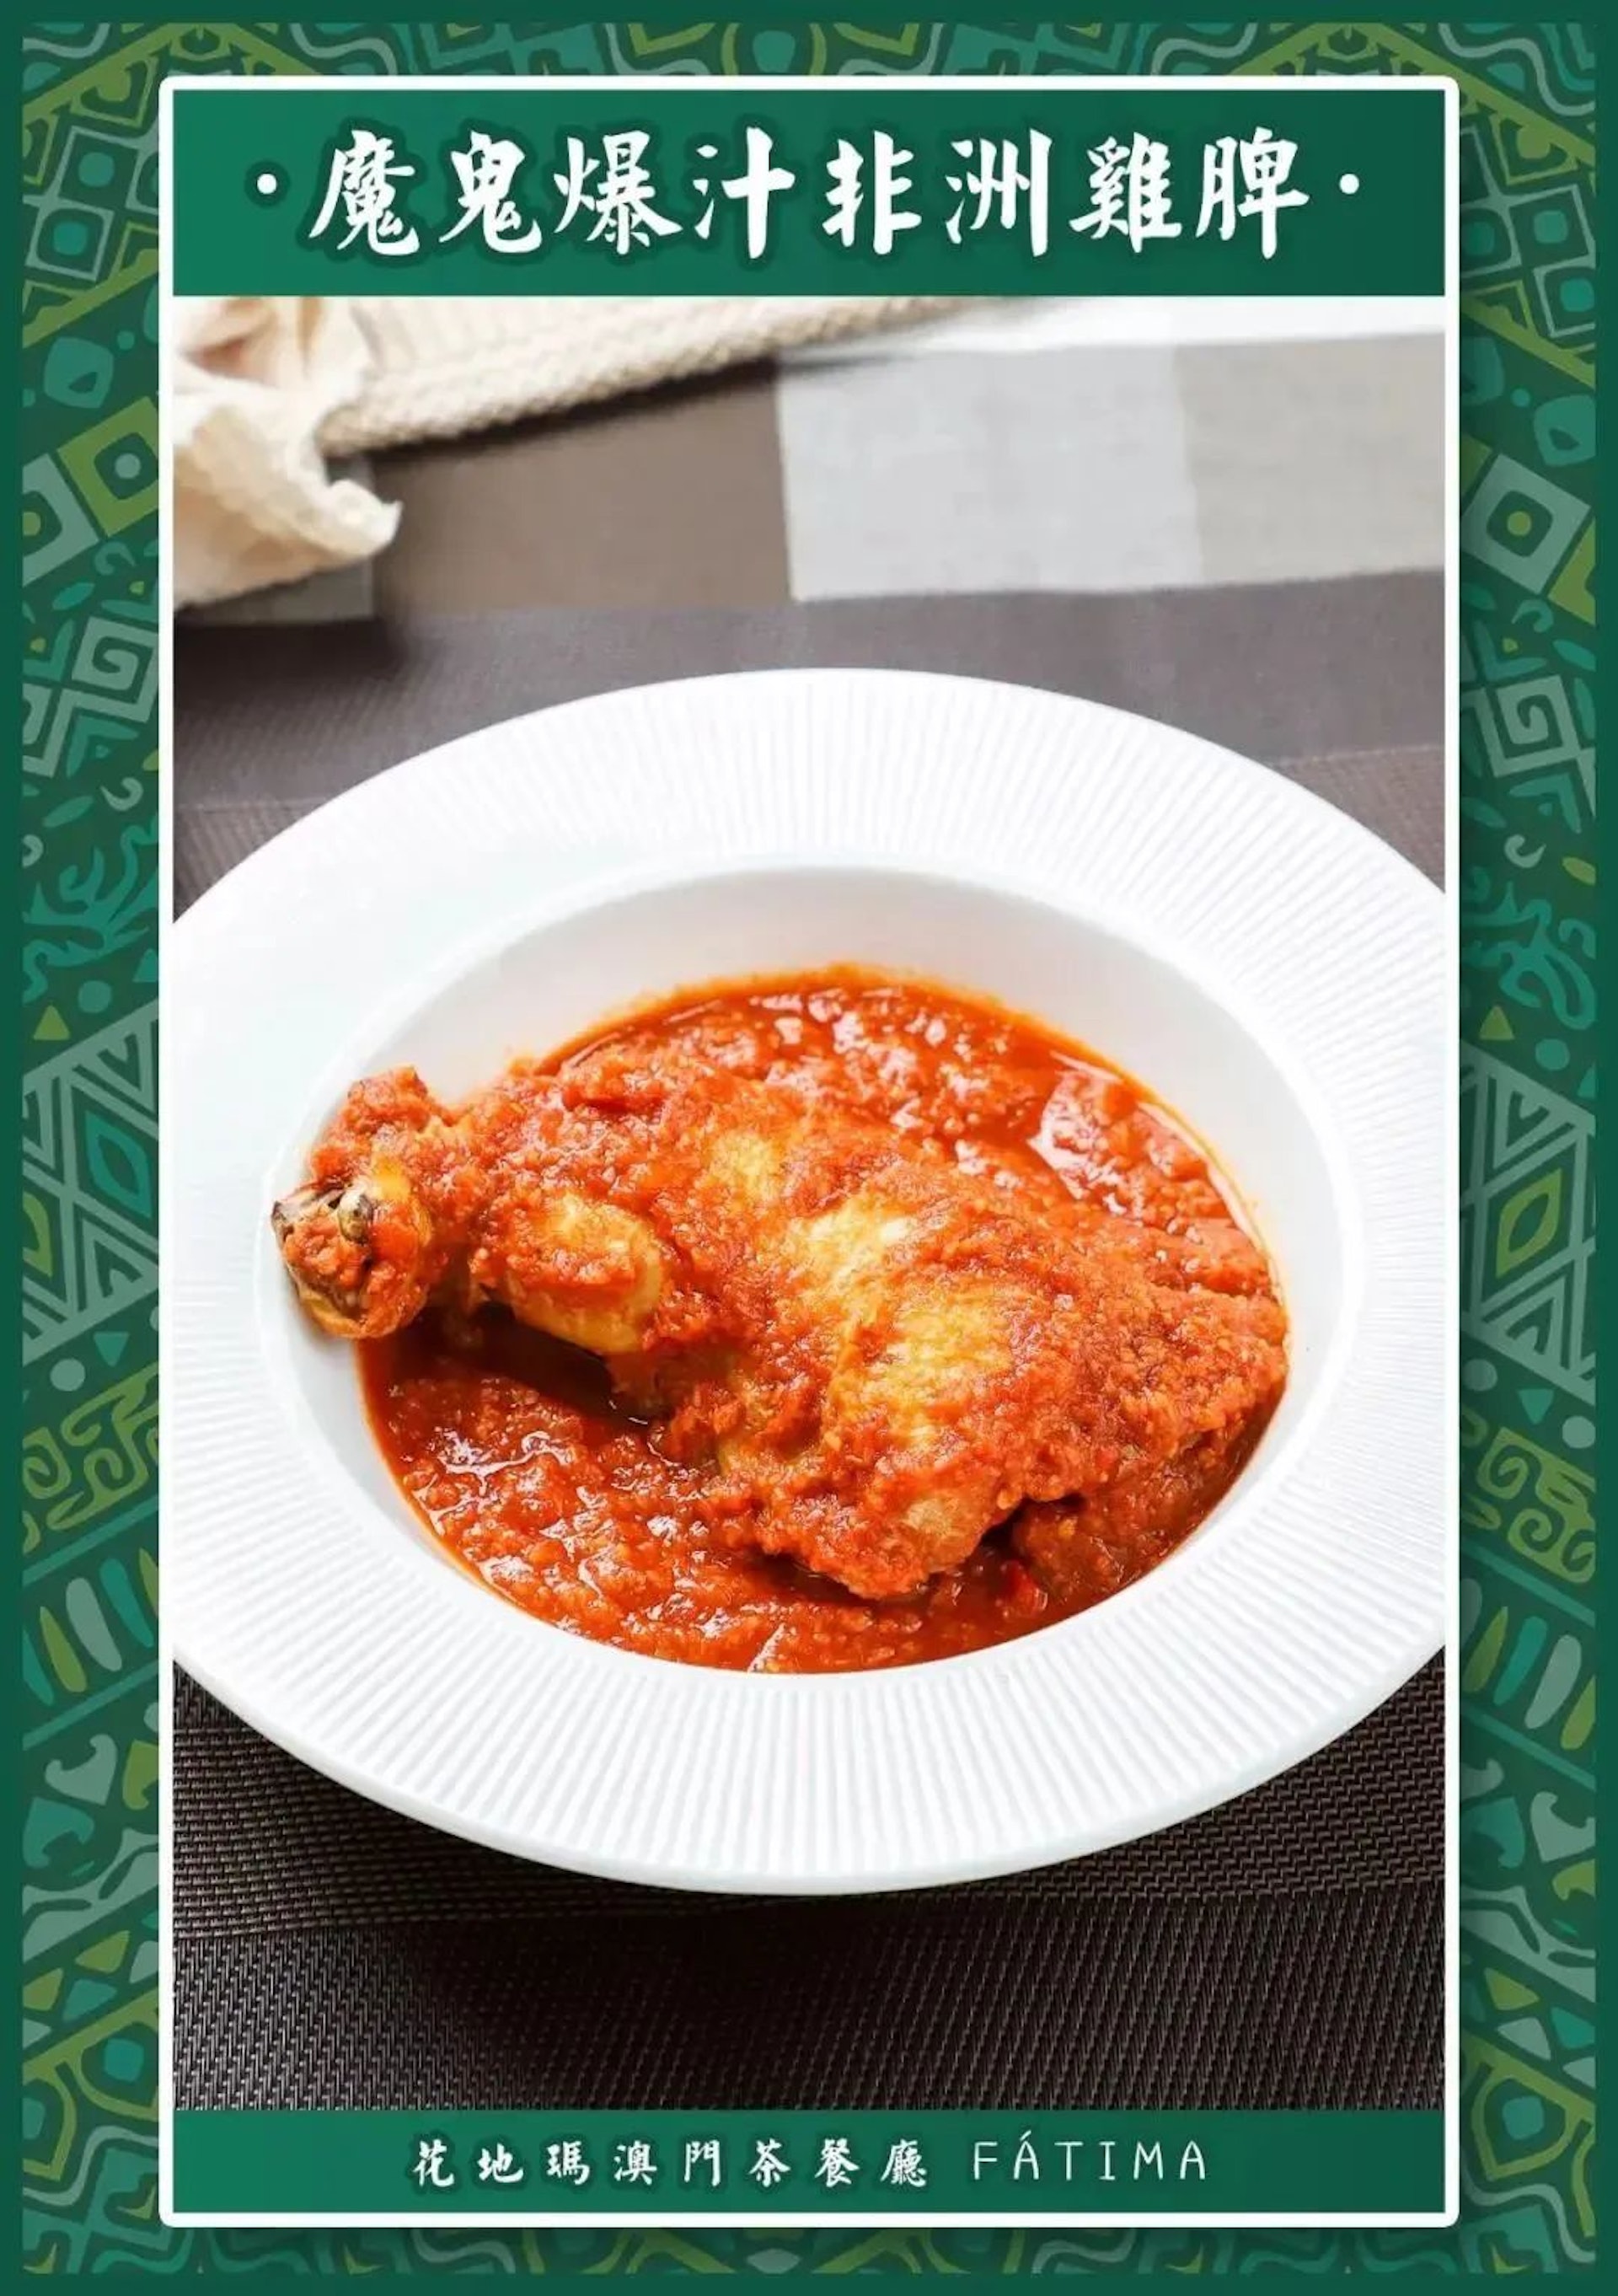 自七十年代末以來，非洲雞一直係澳門葡式餐廳中最著名的菜餚之一，每間餐廳都有著自己獨特的演繹方式~（食在澳門授權使用）